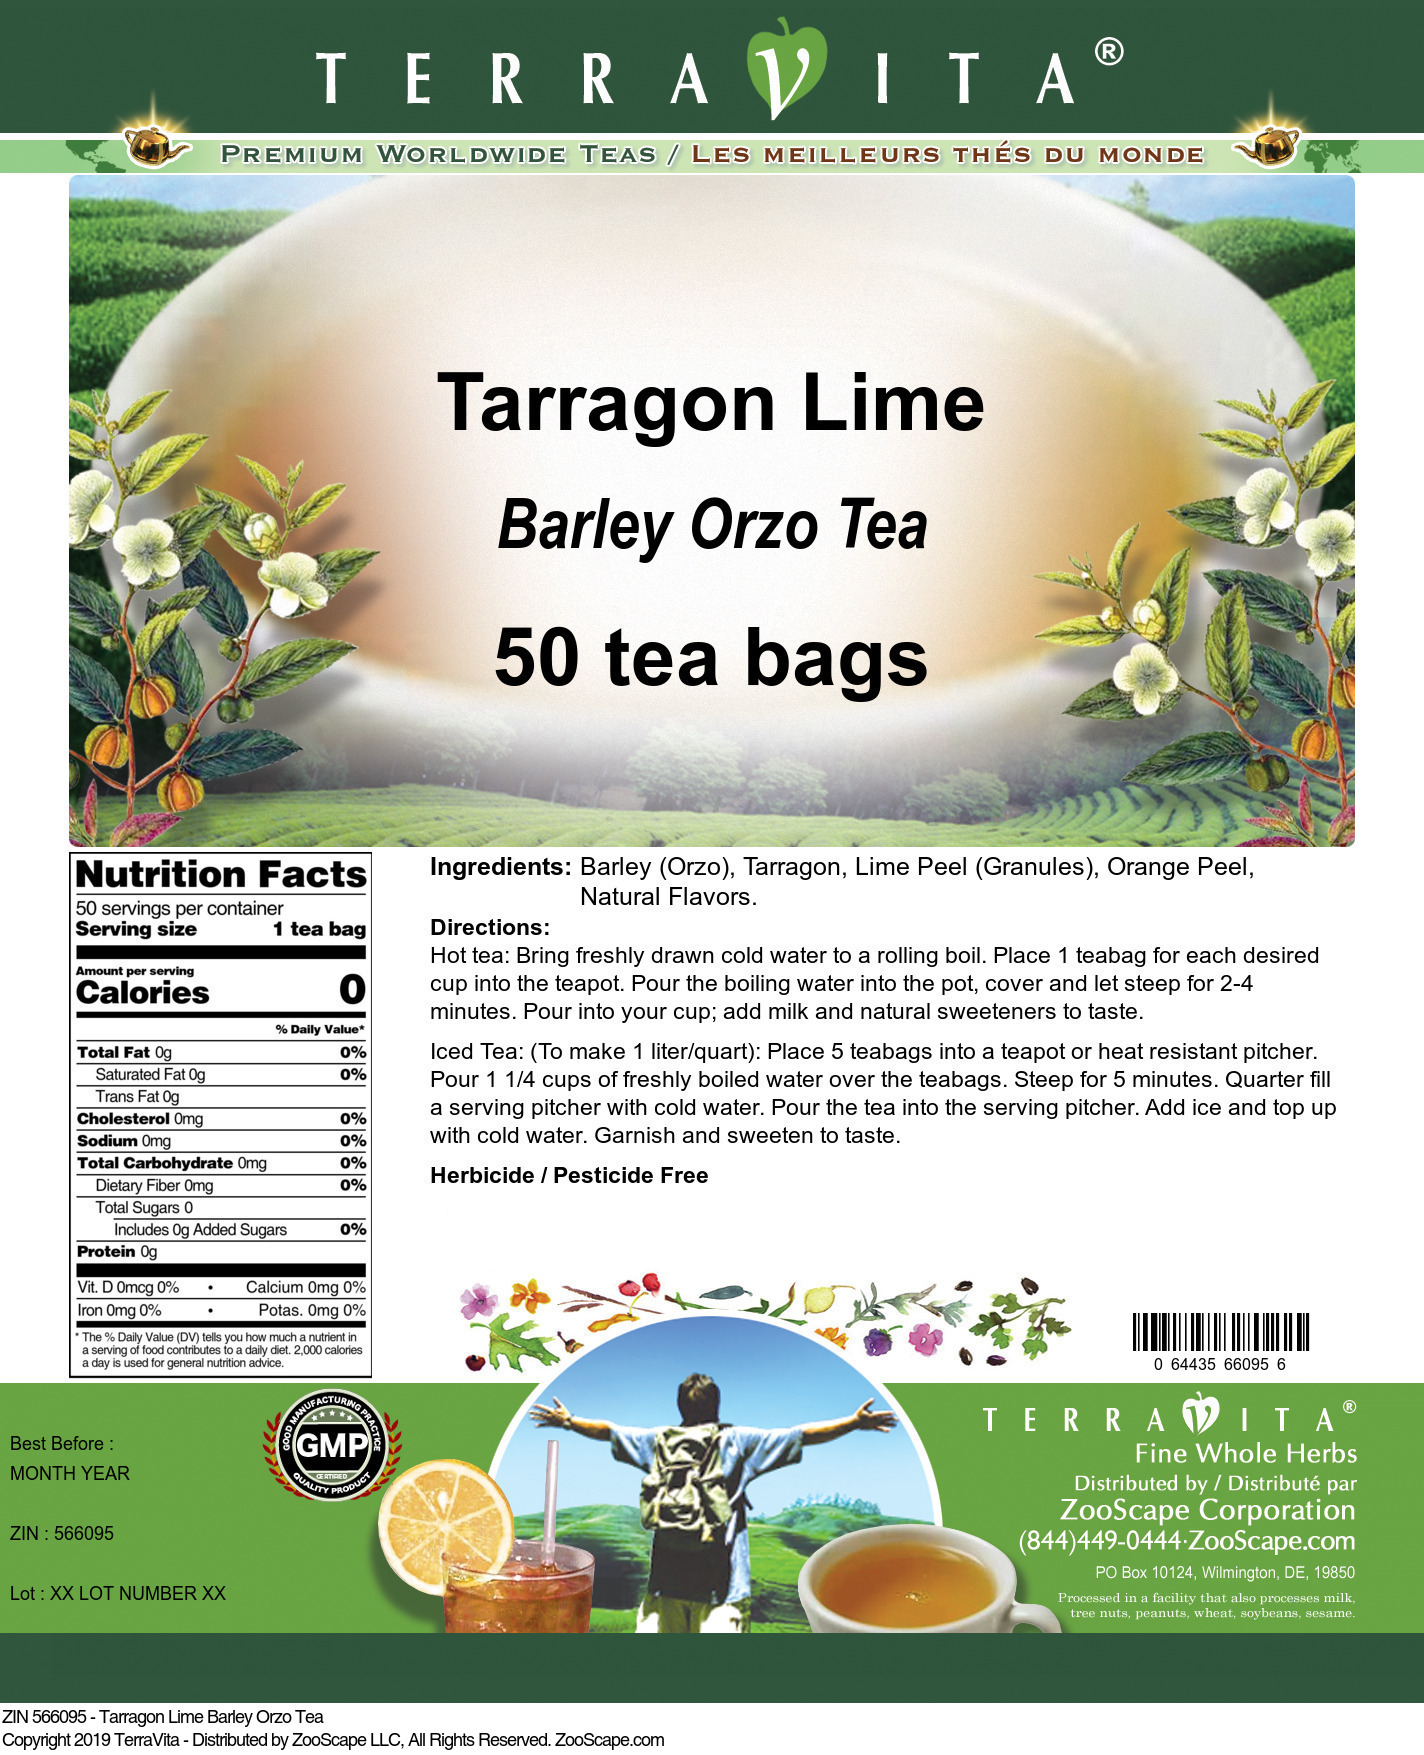 Tarragon Lime Barley Orzo Tea - Label